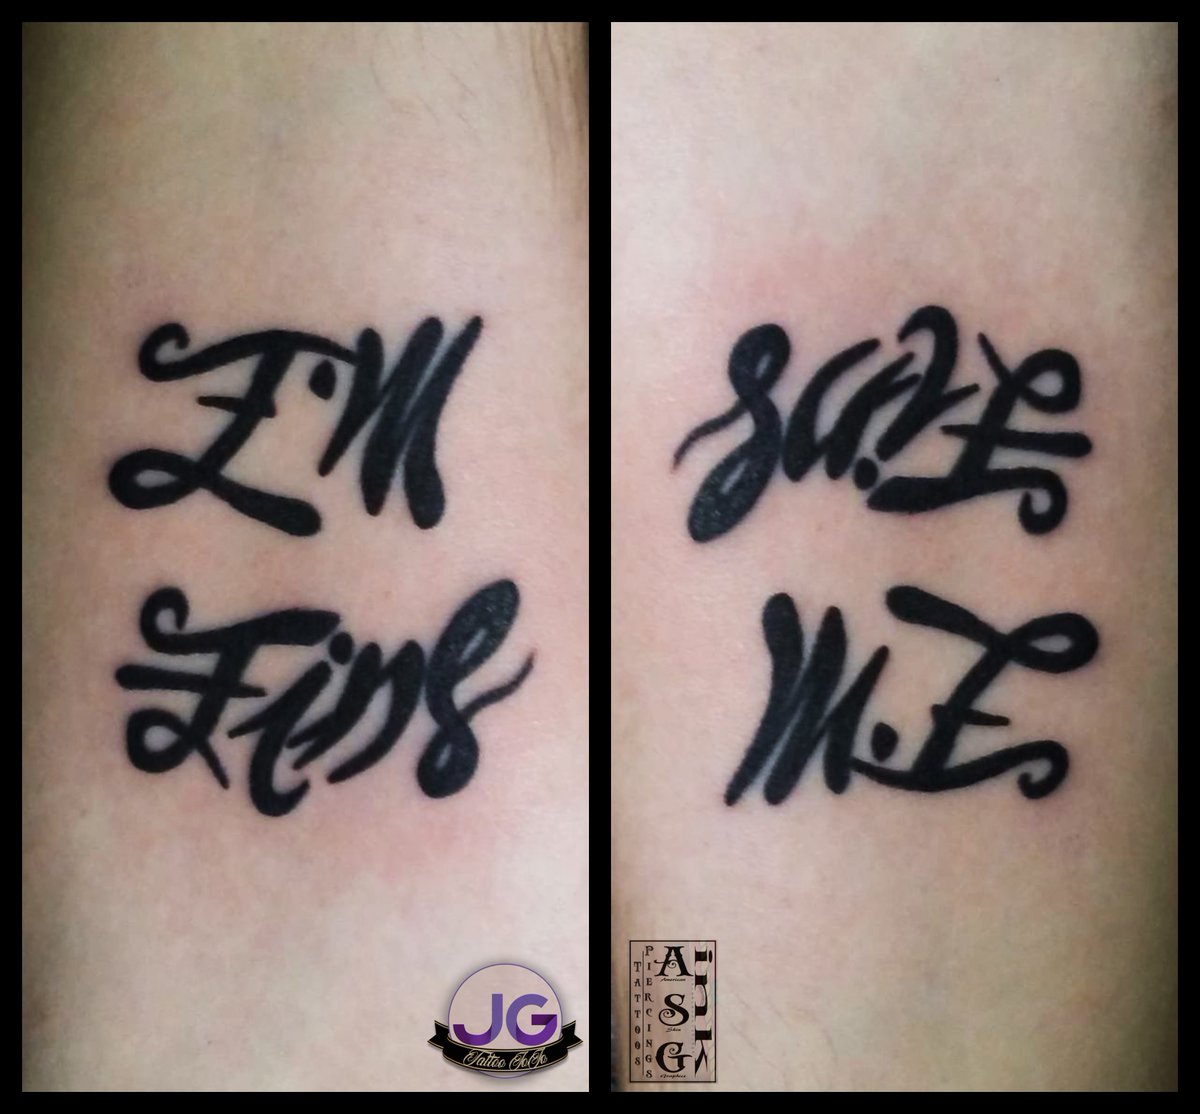 Im fine save me Ambigram tattoo Thanks for looking         zupperblack intenzeink ambigram ambigramtattoo 3dtattoo  Instagram